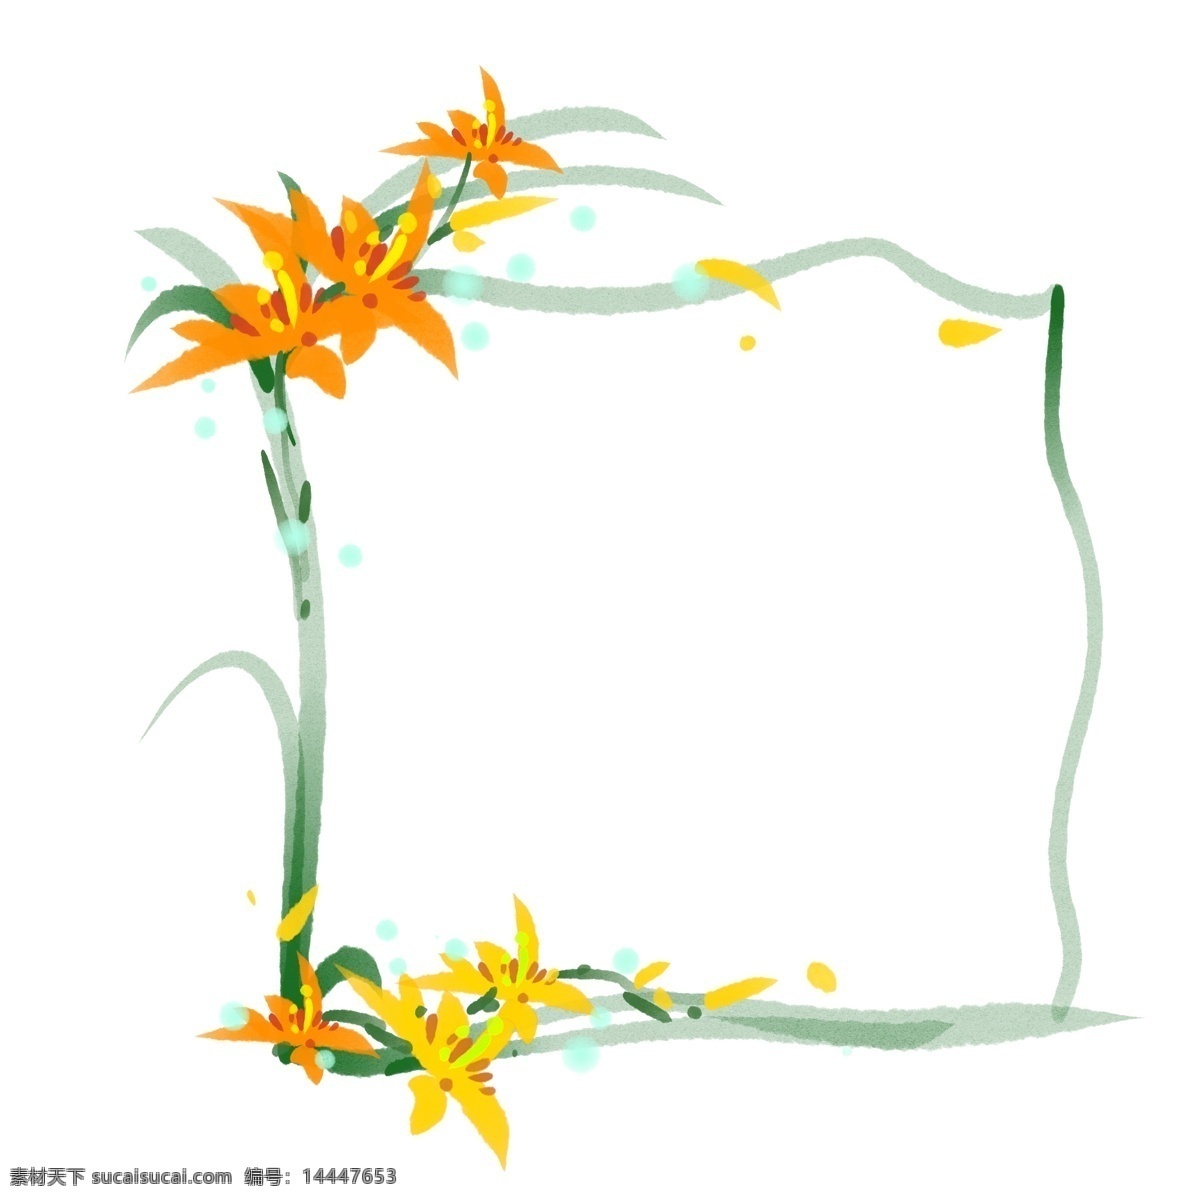 黄色 百合花 花卉 边框 黄色的花卉 卡通边框 花卉边框 鲜花边框 花朵边框 花环边框 百合花花卉